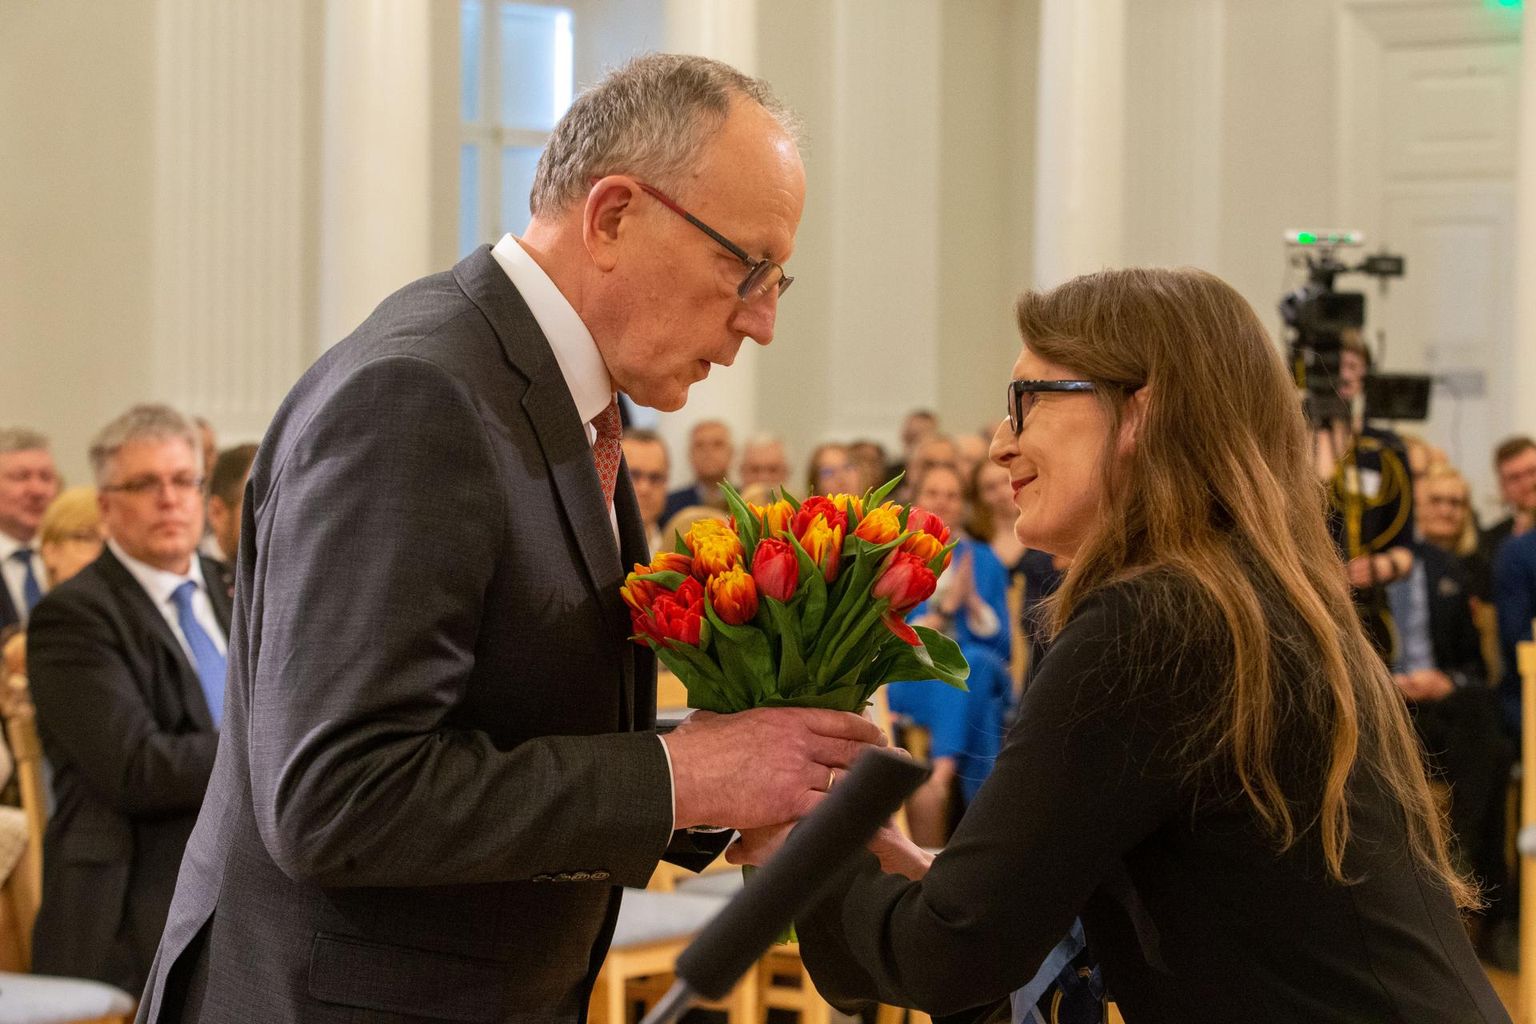 Teise hääletusvooru järel õnnitles valimiskomisjoni esimees Raili Marling (paremal) Tartu ülikooli järgmist rektorit Toomas Asserit tulbikimbuga.